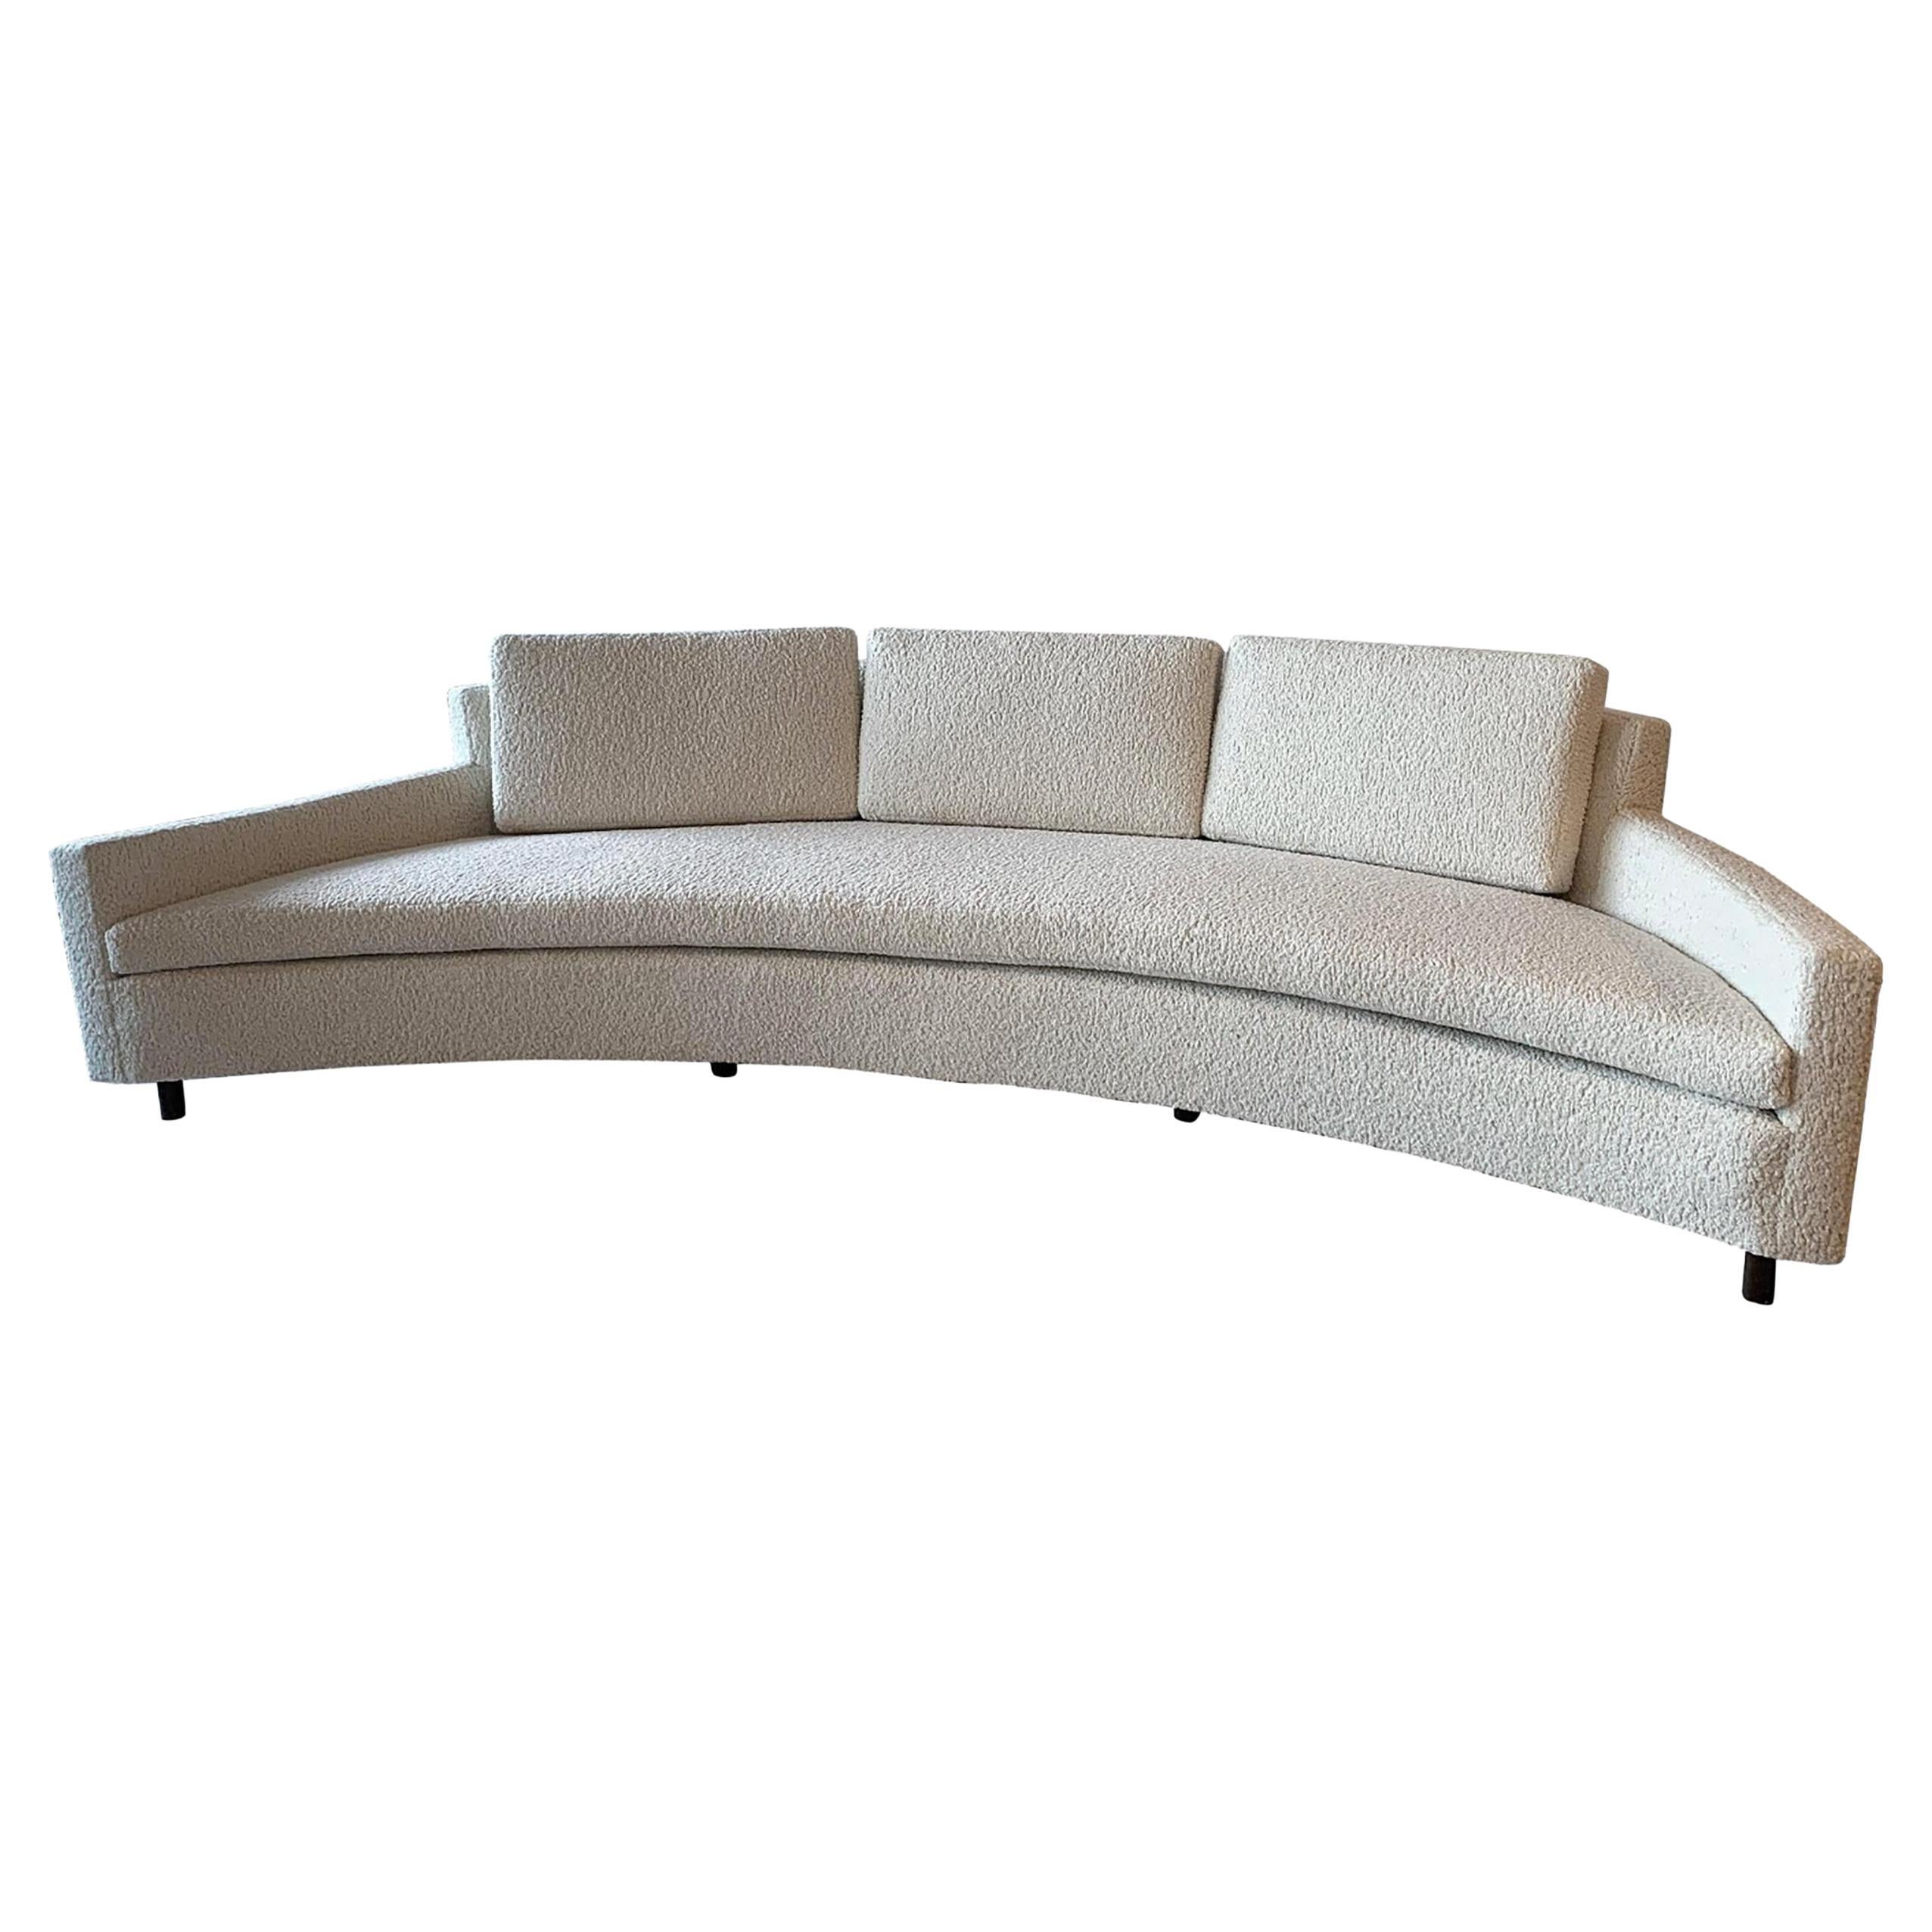 
Dieses atemberaubende Crescent-Sofa von Designmeister Harvey Probber ist ab sofort erhältlich! Stellen Sie sich Folgendes vor: Sie faulenzen in purer Opulenz auf einem Sofa, das so kurvenreich ist wie die Vogelstraßen und ebenso glamourös. Und